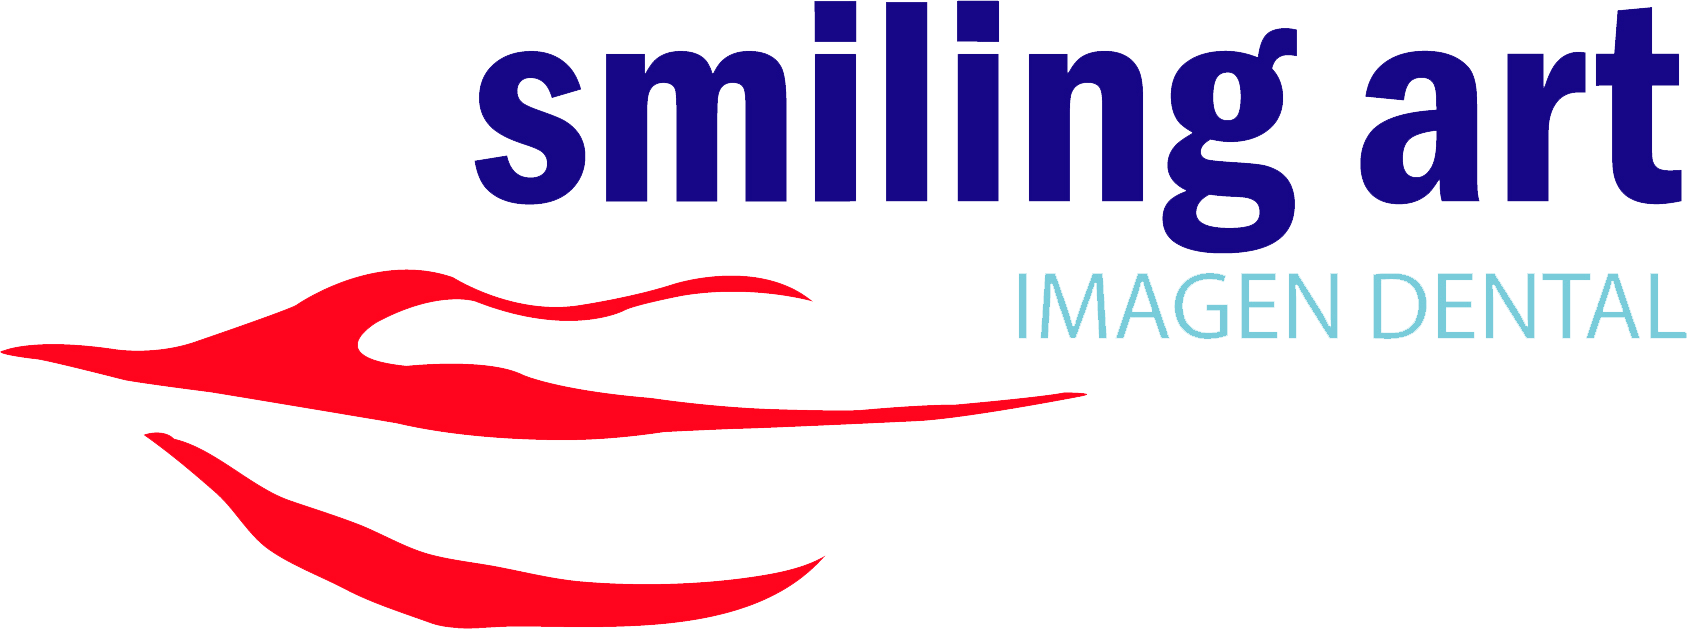 Smiling Art, Imagen Dental